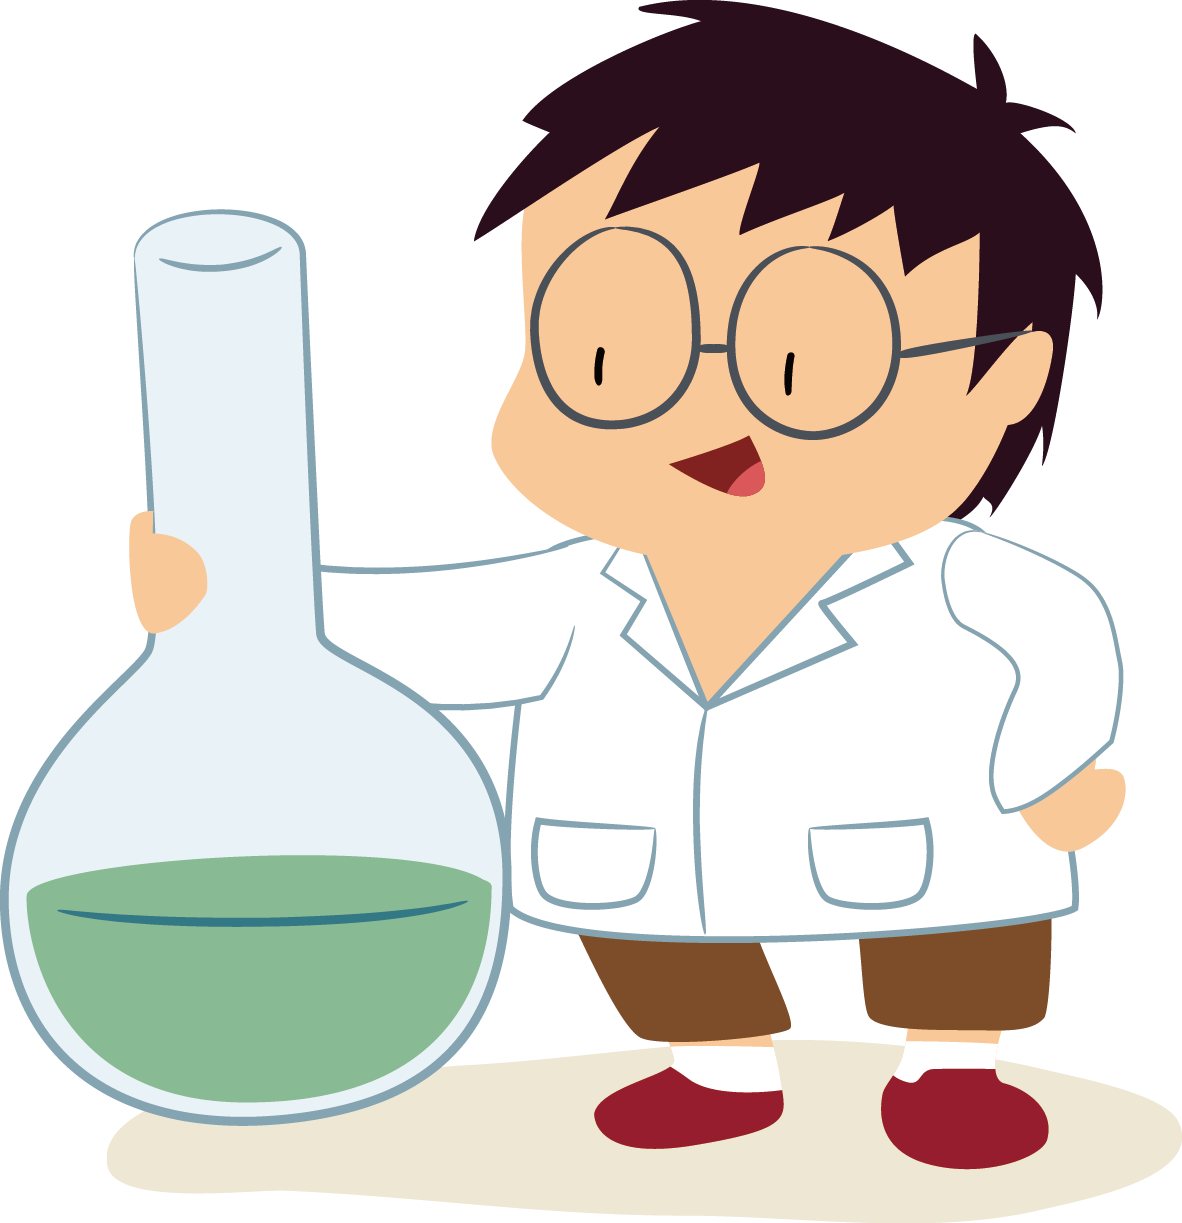 scientist clipart professor